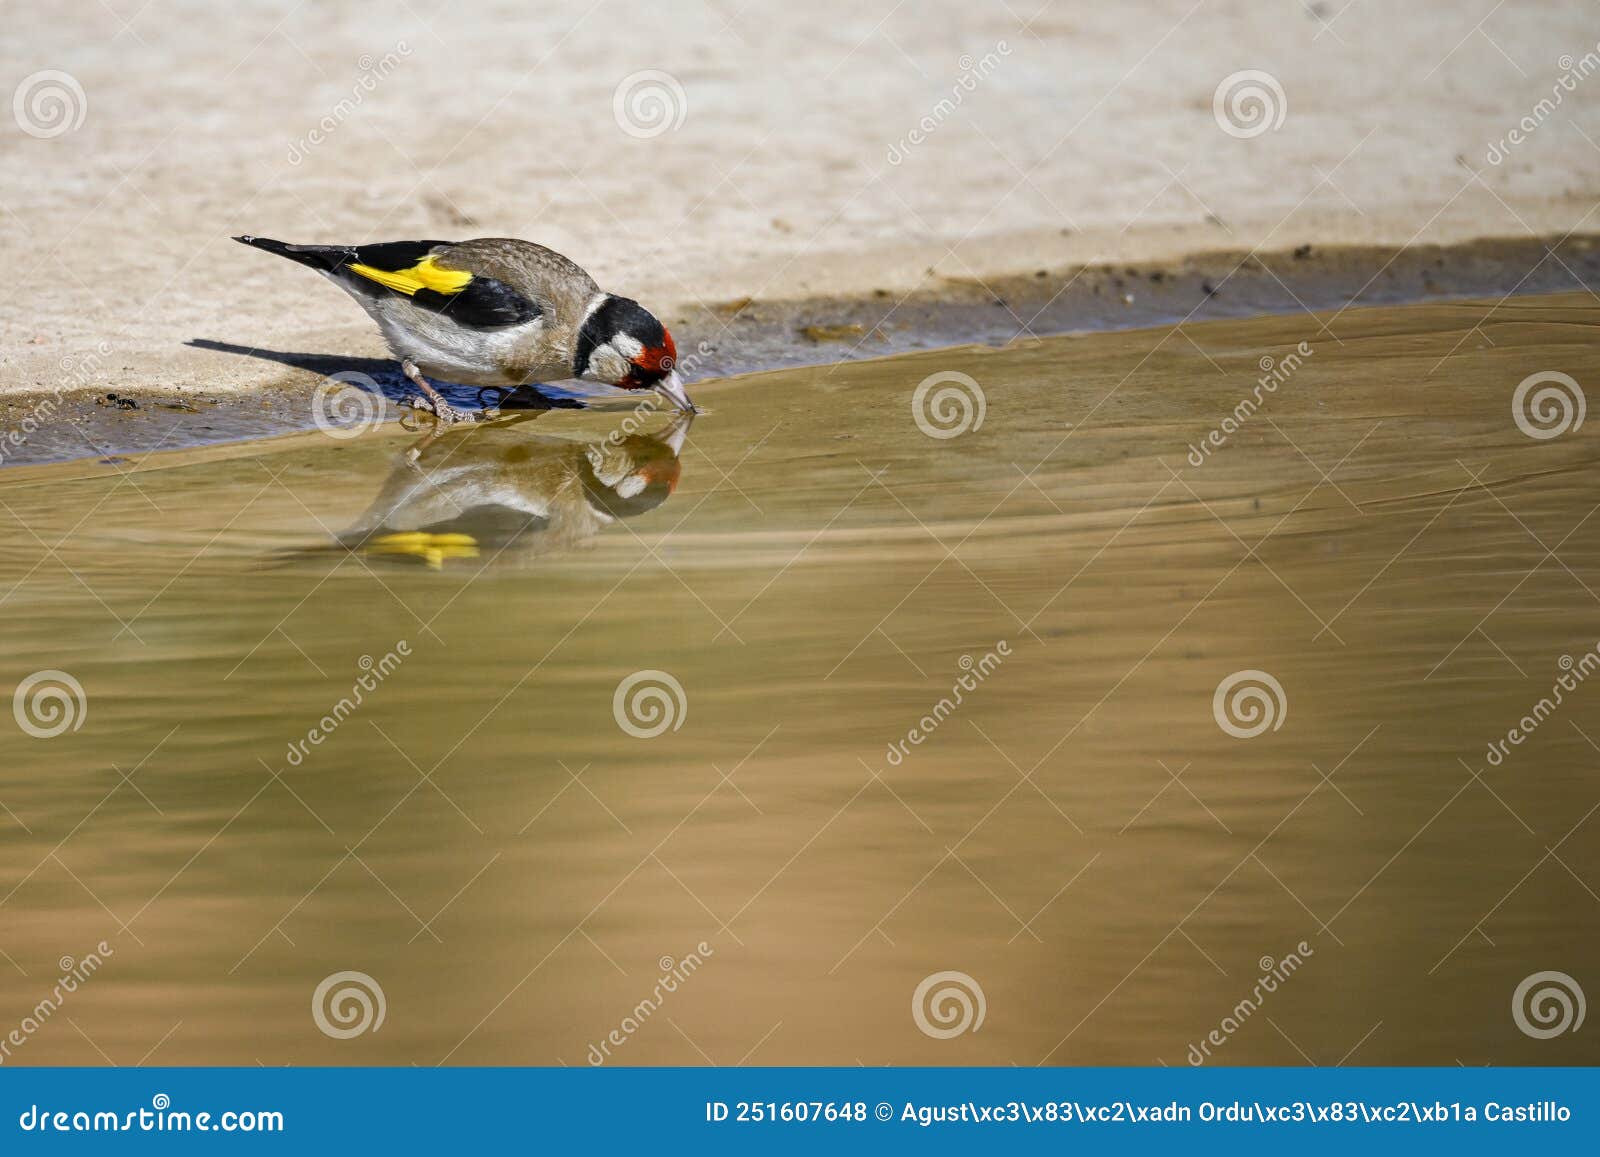 carduelis carduelis - el jilguero europeo o cardelina es un ave paseriforme perteneciente a la familia de los pinzones